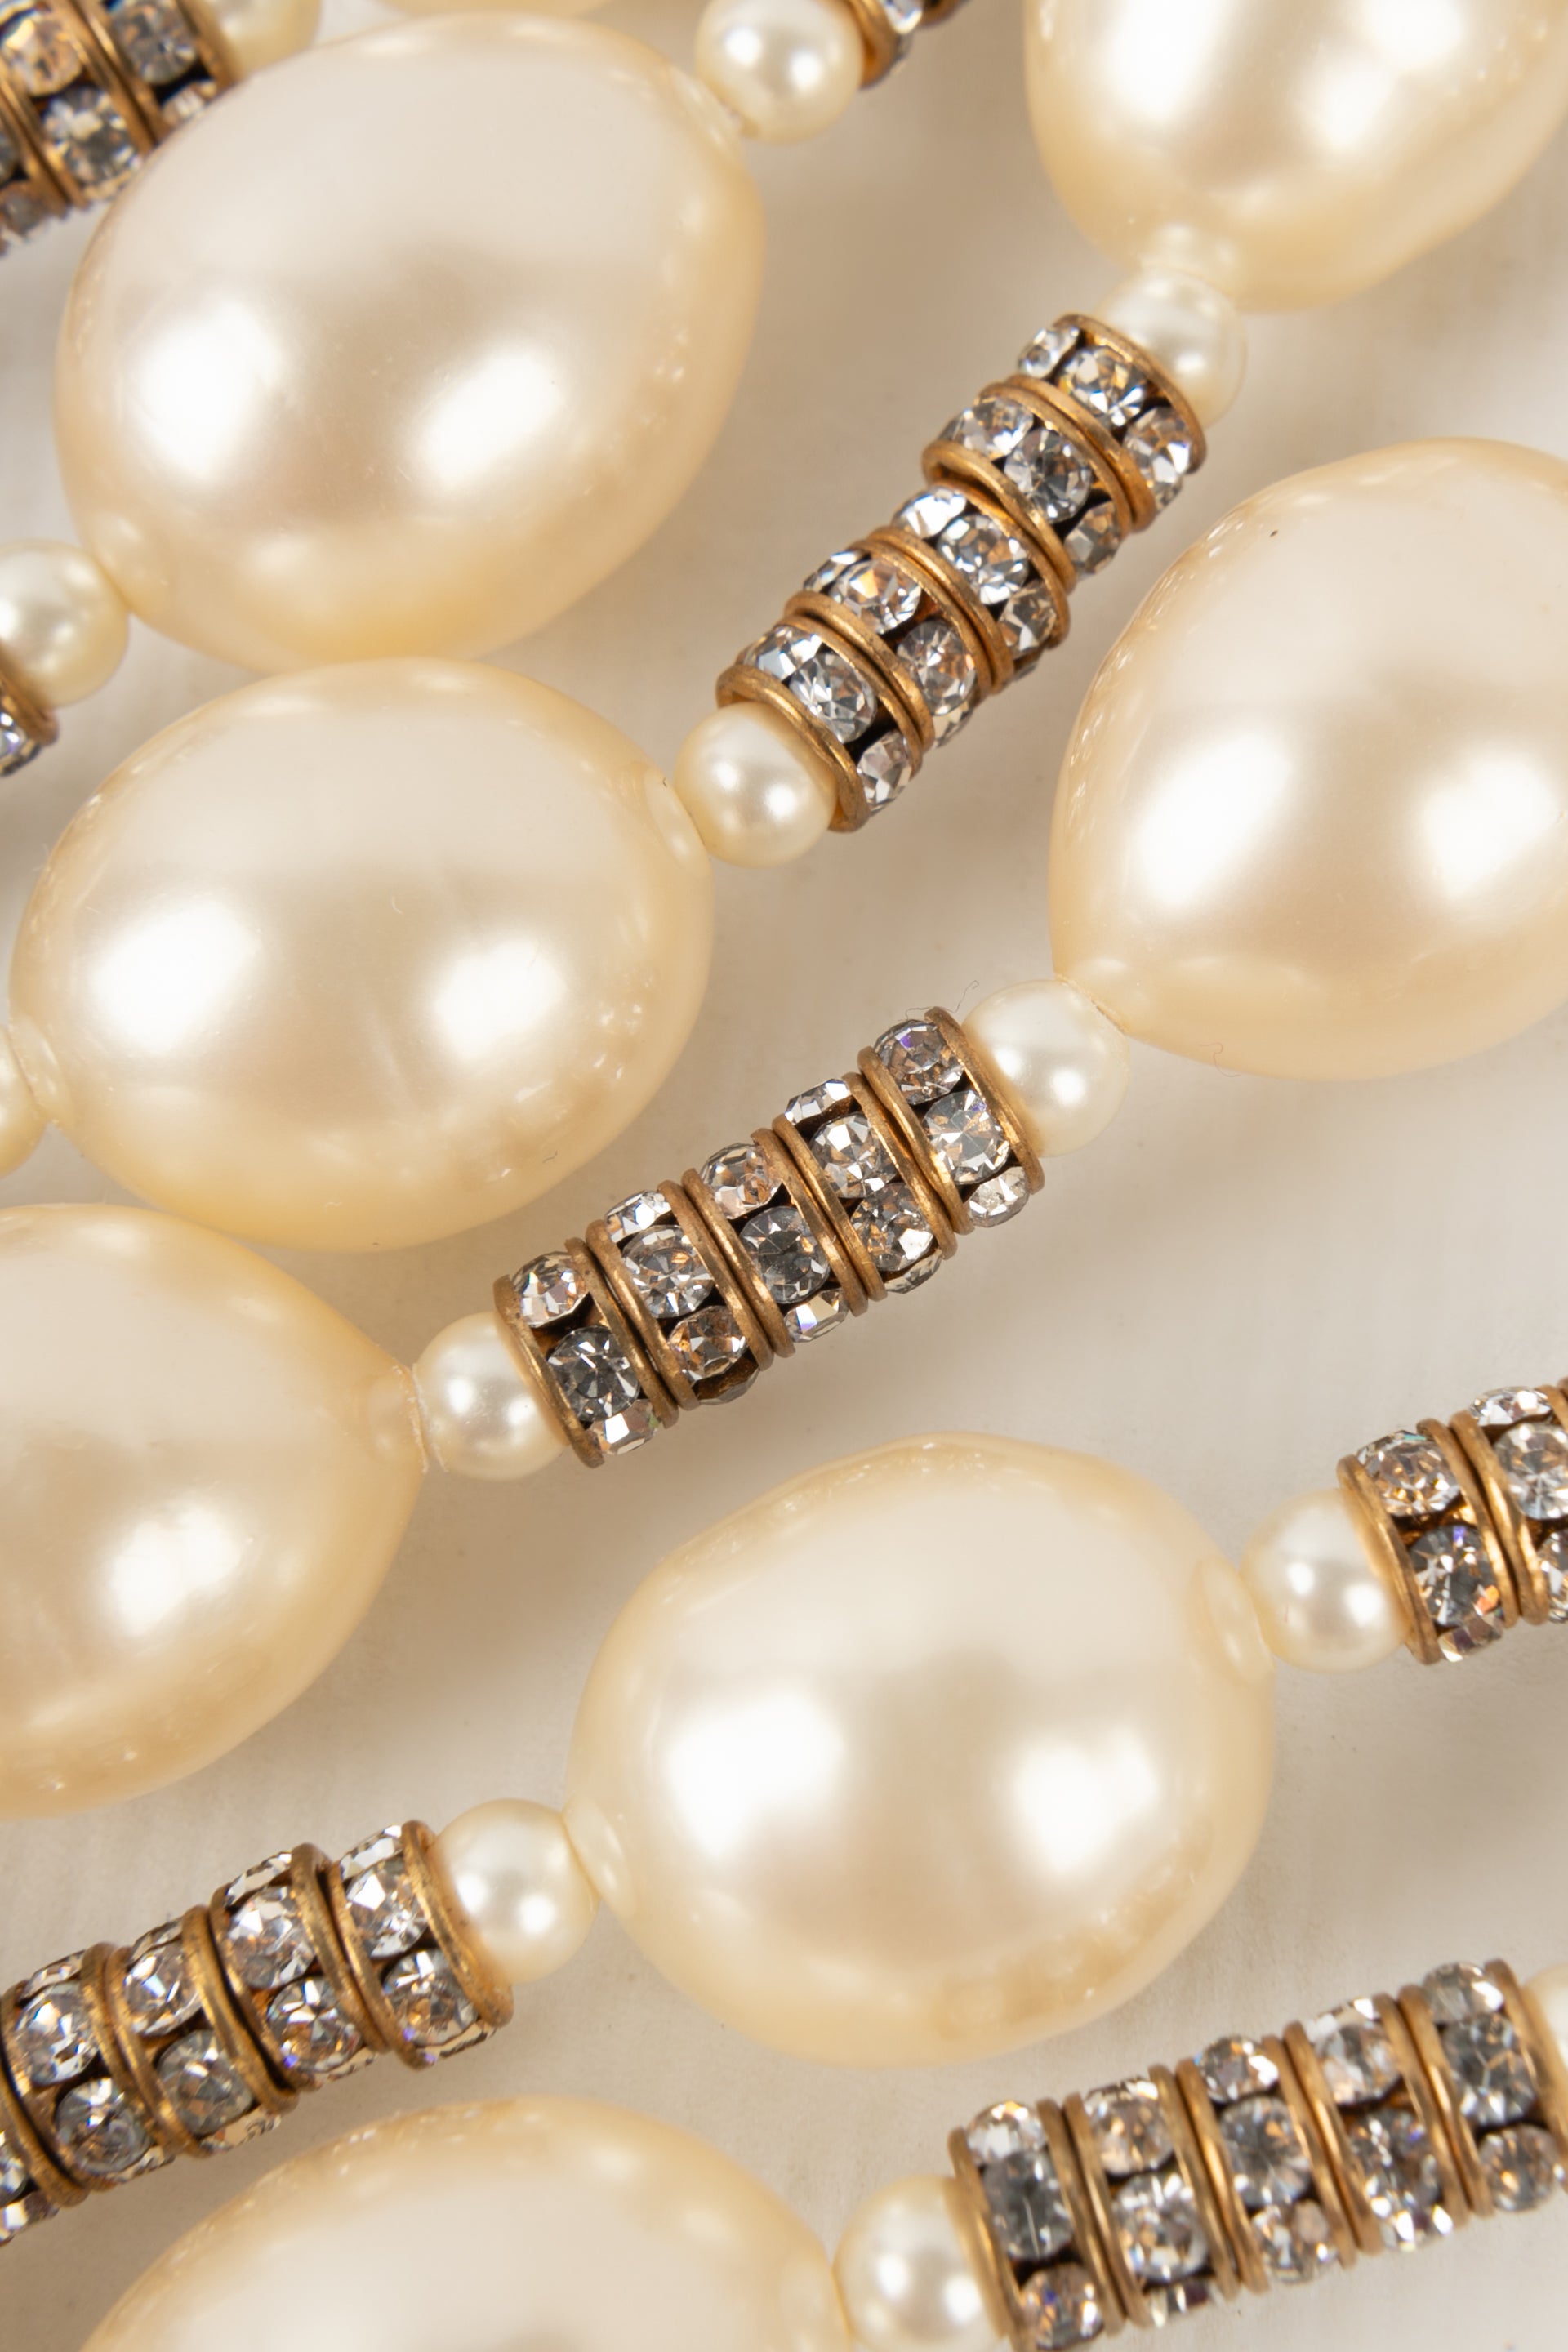 Collier de perles nacrées Chanel 1990s